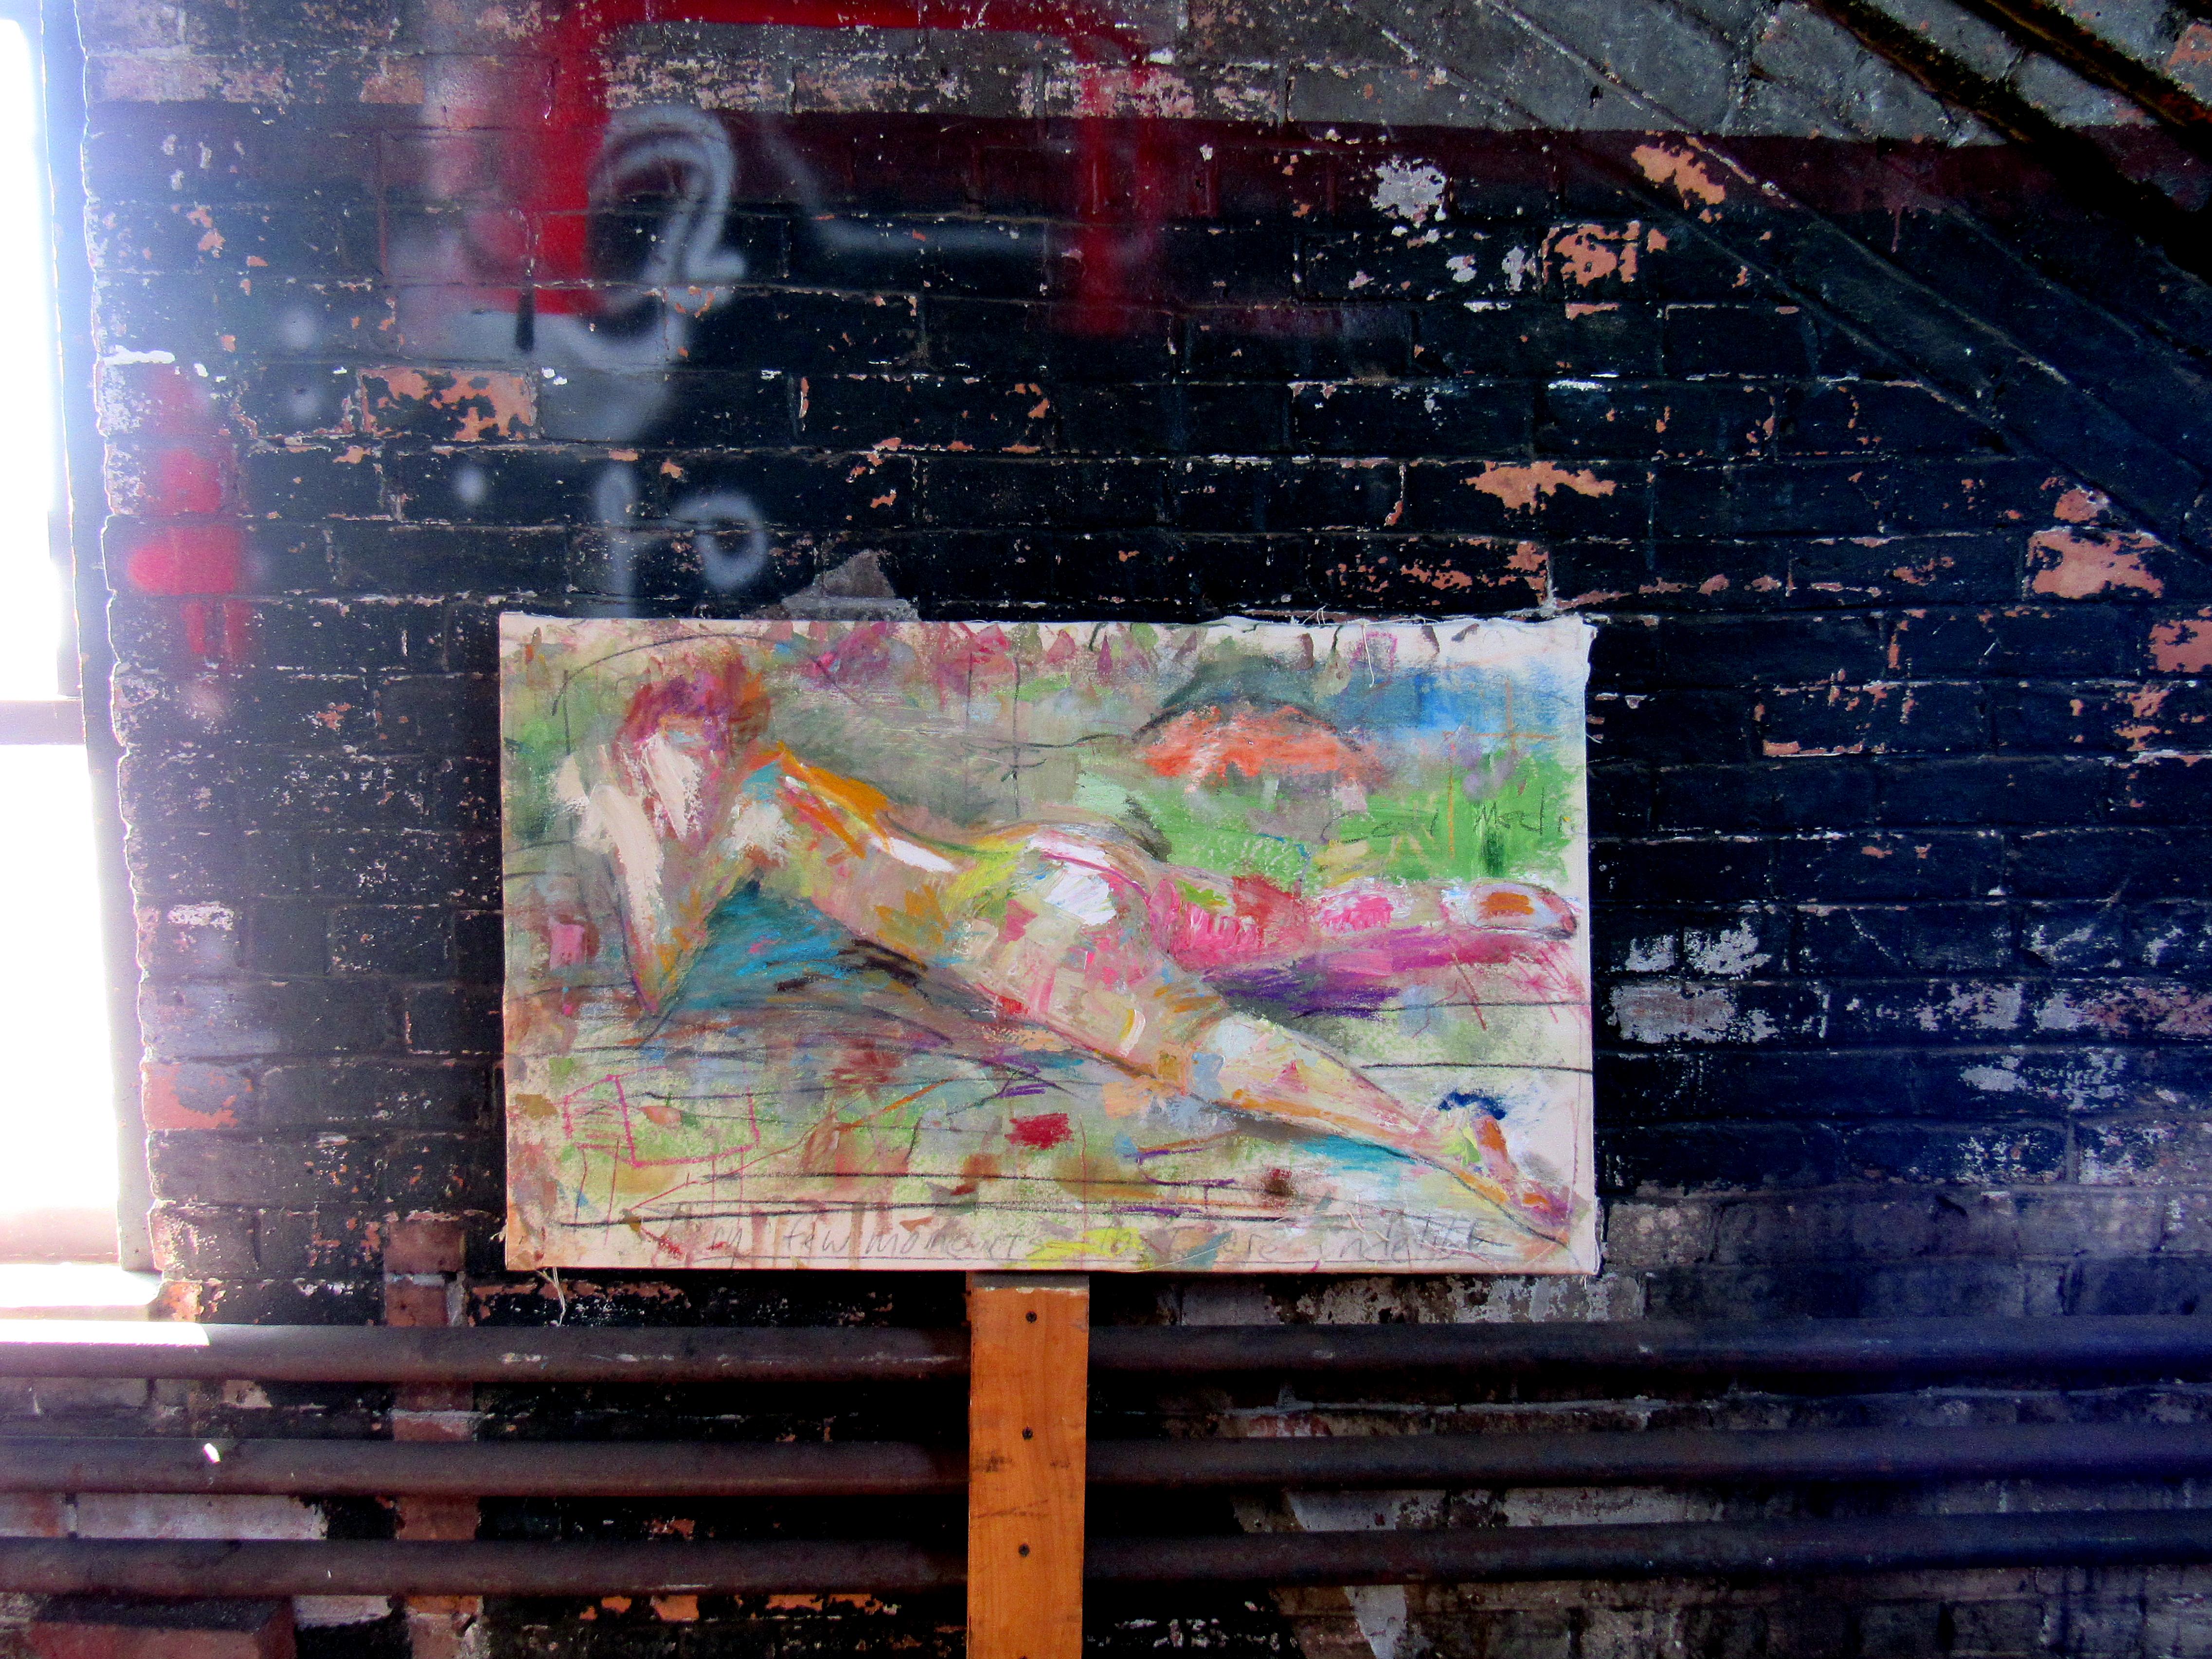 Odalisk, farbenfrohe, gestische abstrakte Skulptur, Akt, Figur, Landschaft – Painting von C. Dimitri